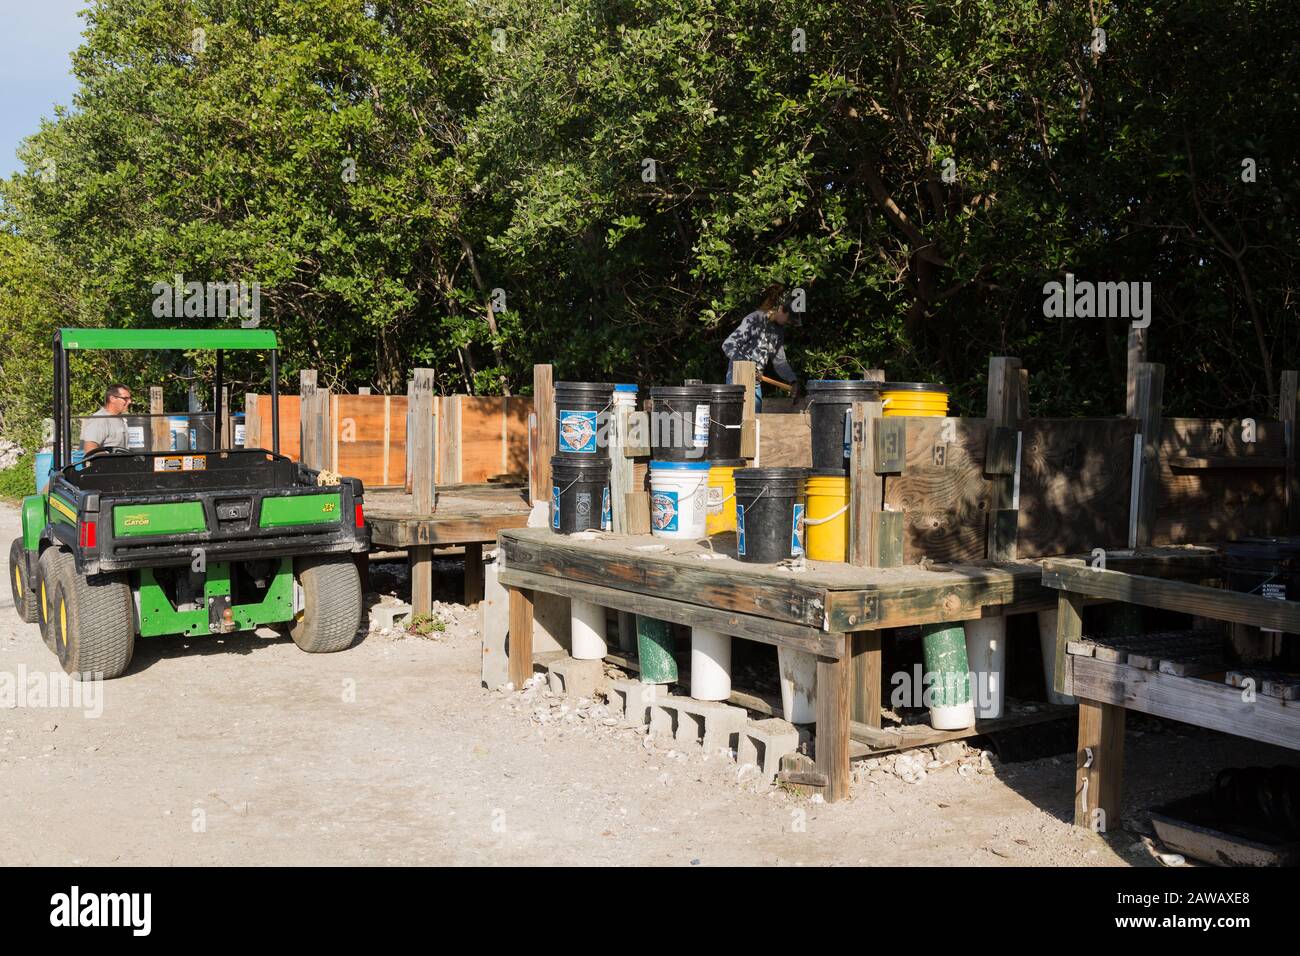 Ein John Deere Gator Utility Vehicle wird neben dem Oyster Reef Reef Restoration am Florida Oceanographic Coastal Center in Stuart, Florida, geparkt. Stockfoto